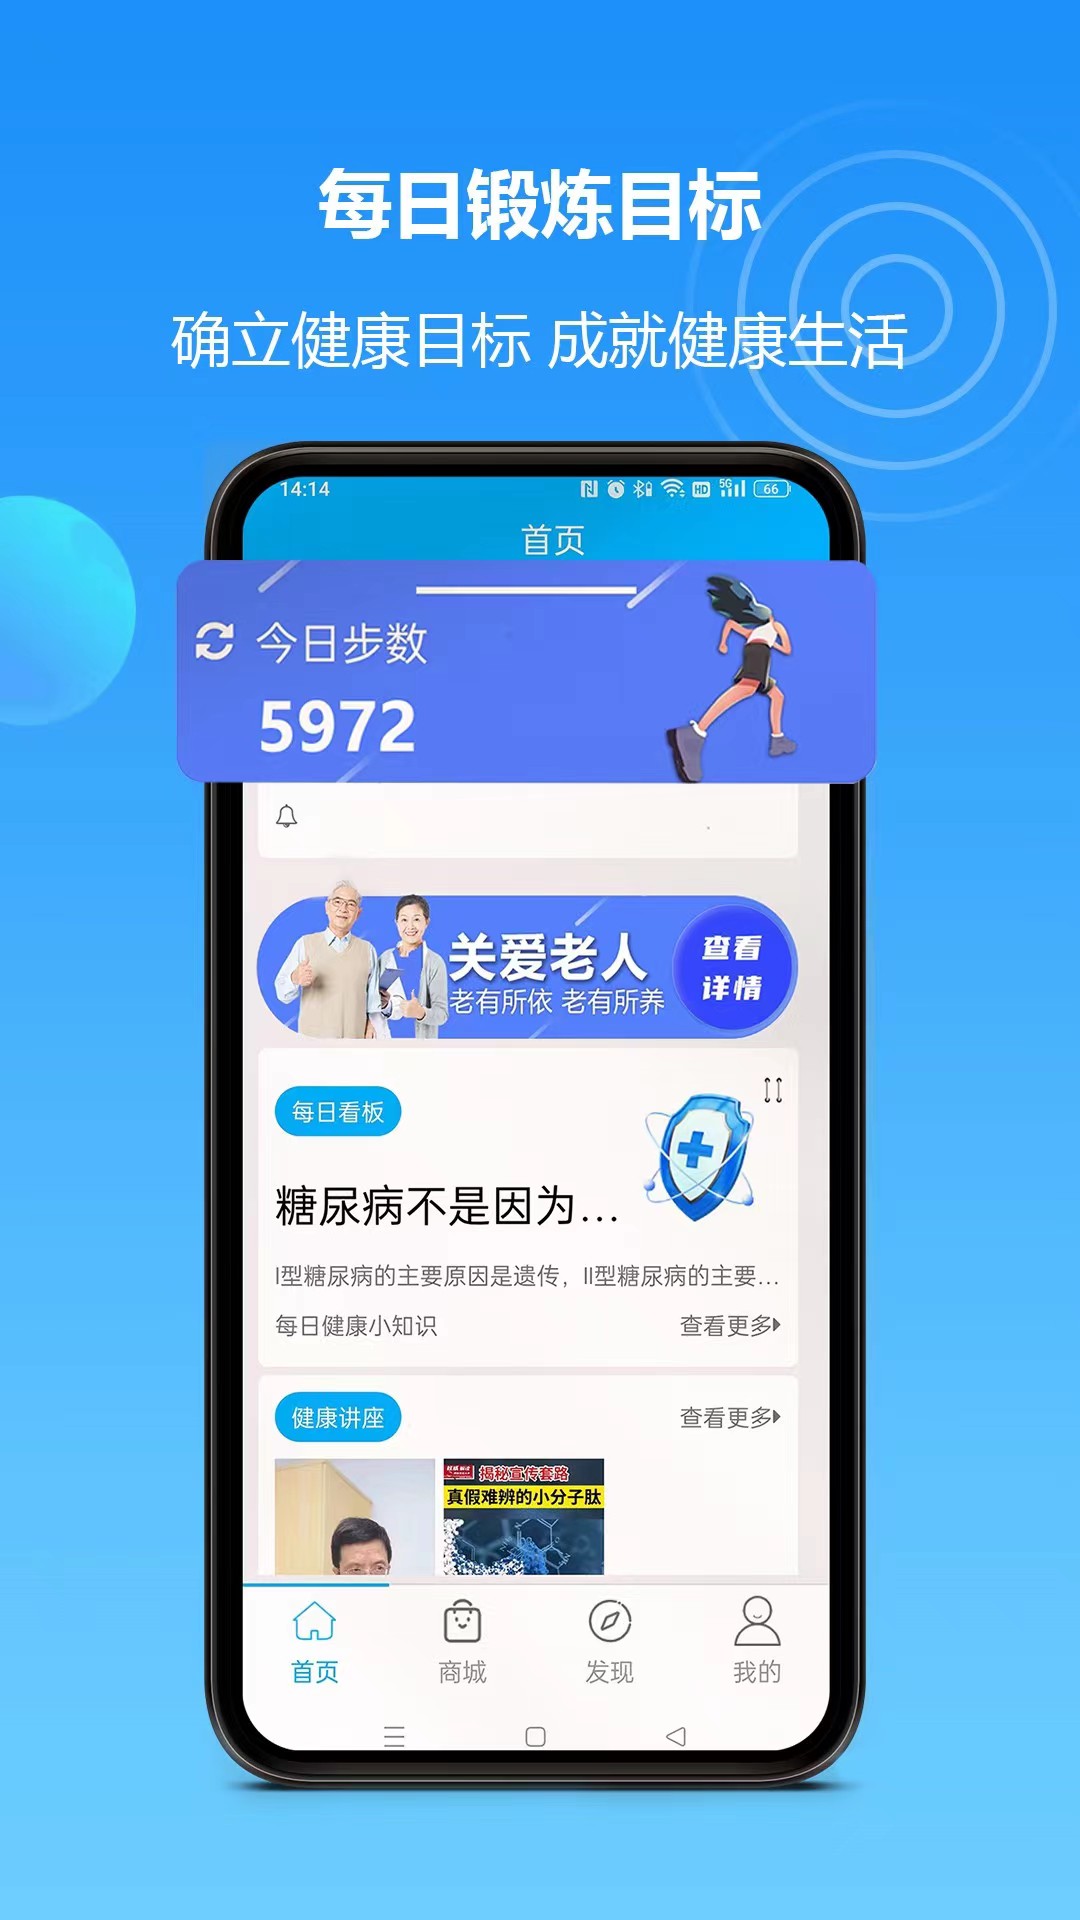 岚惠堂app下载,岚惠堂app官方版 v1.0